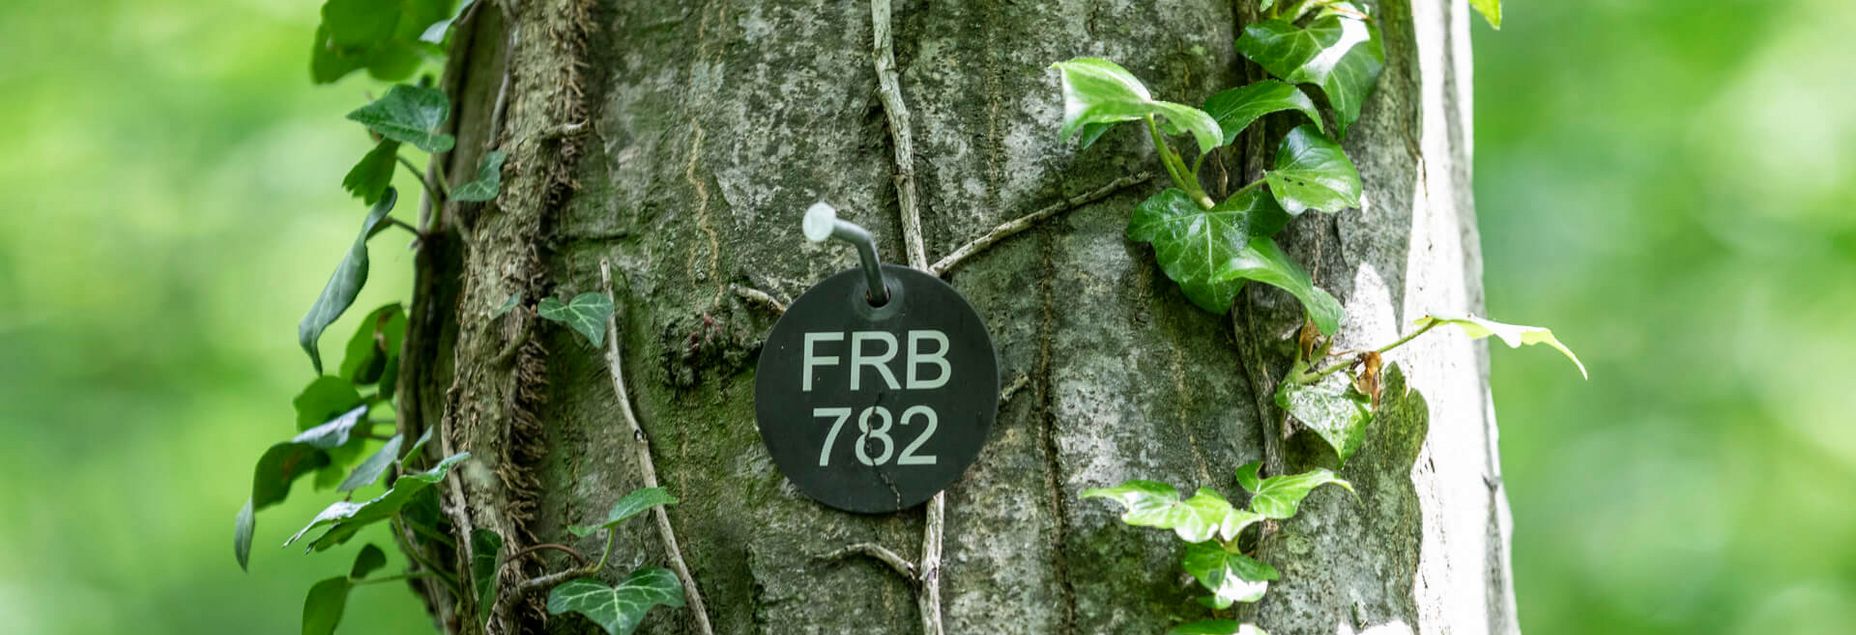 FRB 782 - Plakette